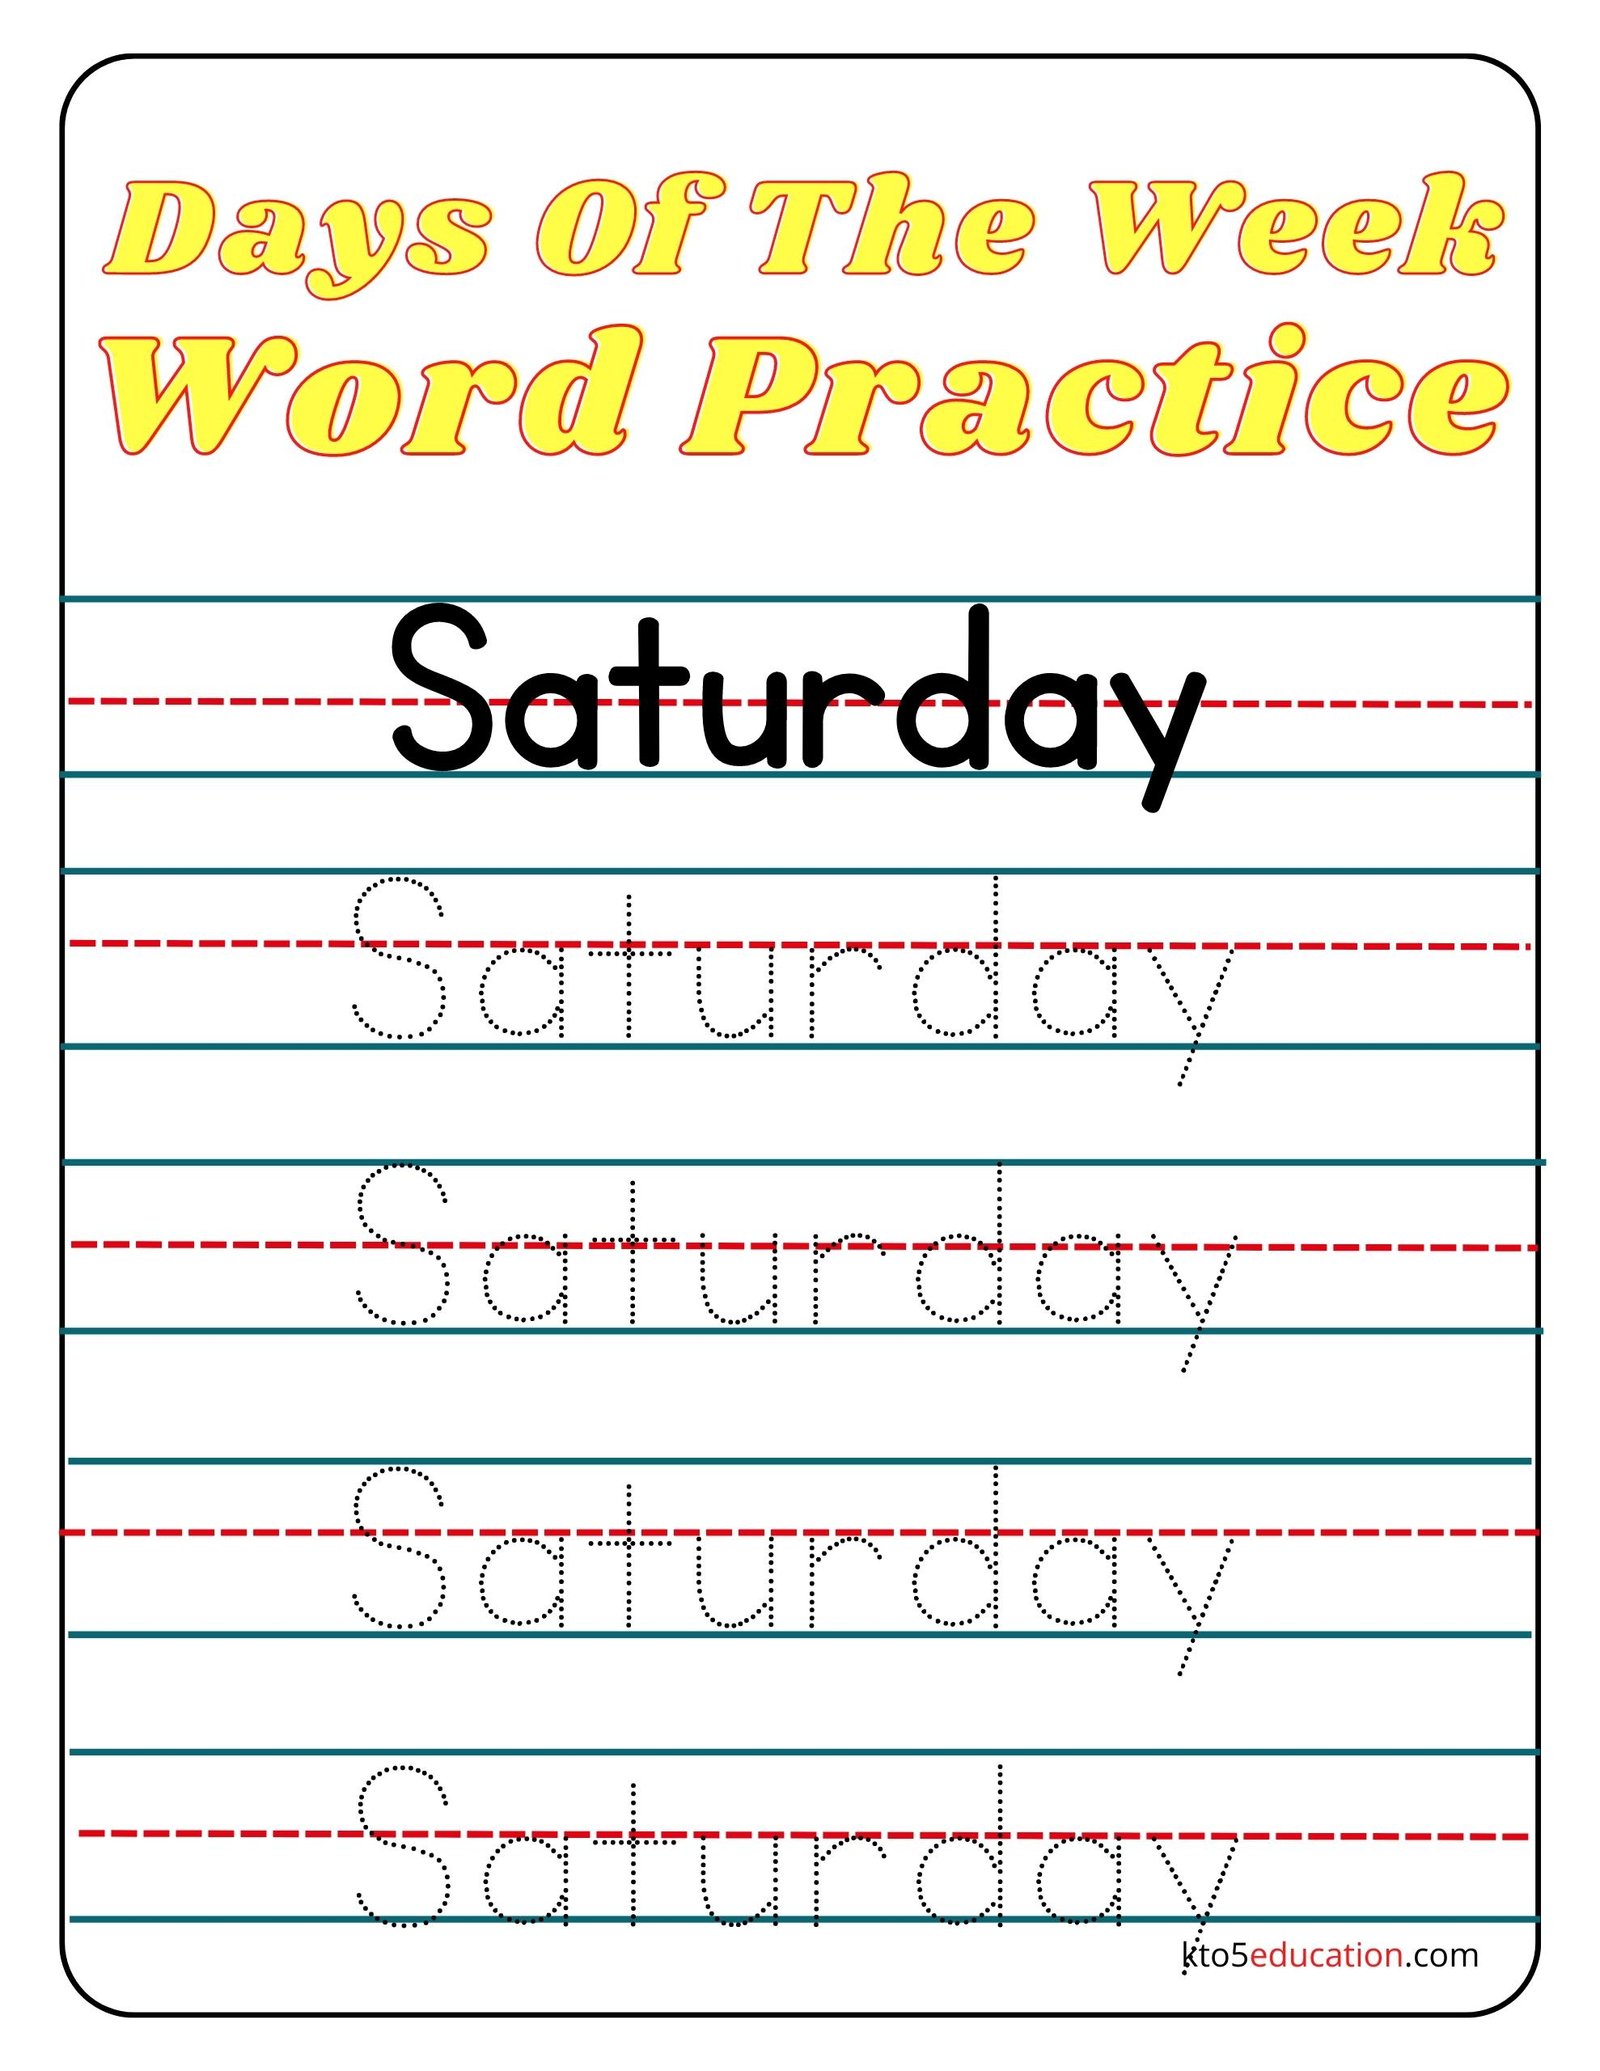 Days Of The Week Saturday Word Practice Worksheet